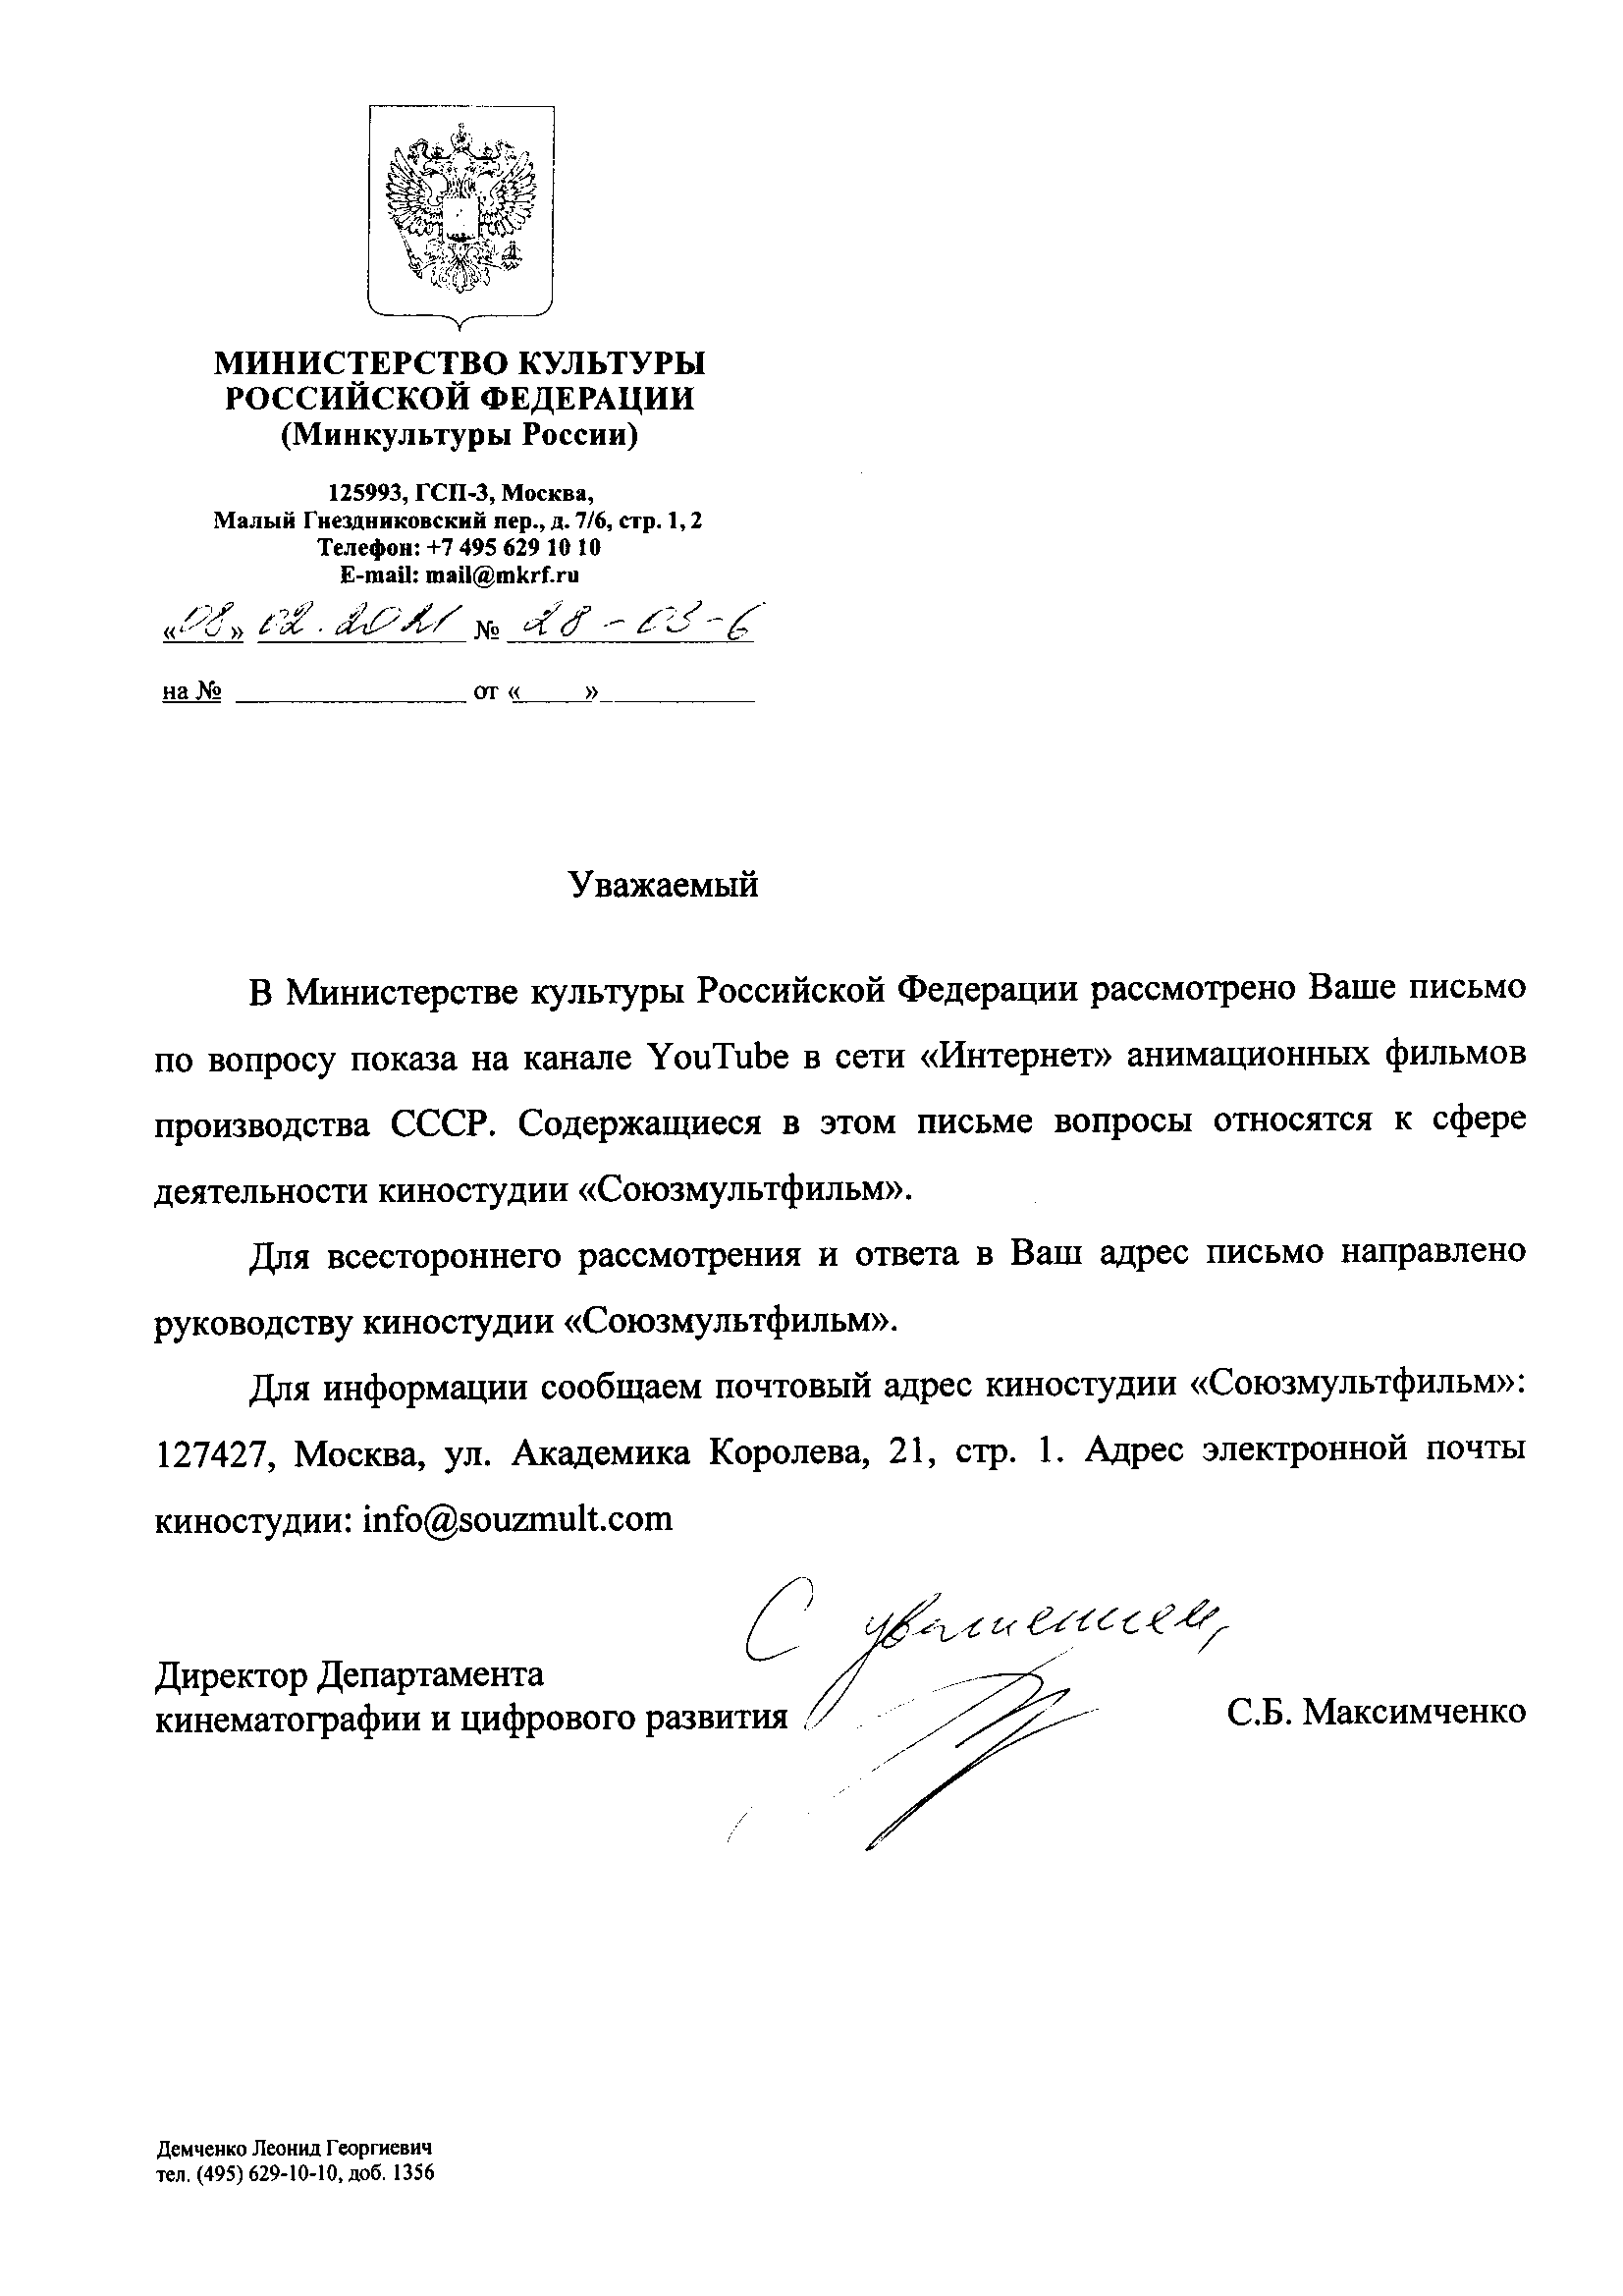 Минкульт и ФАС ответили на запросы о ситуации с удалением с Ютюба советских мультиков - 1